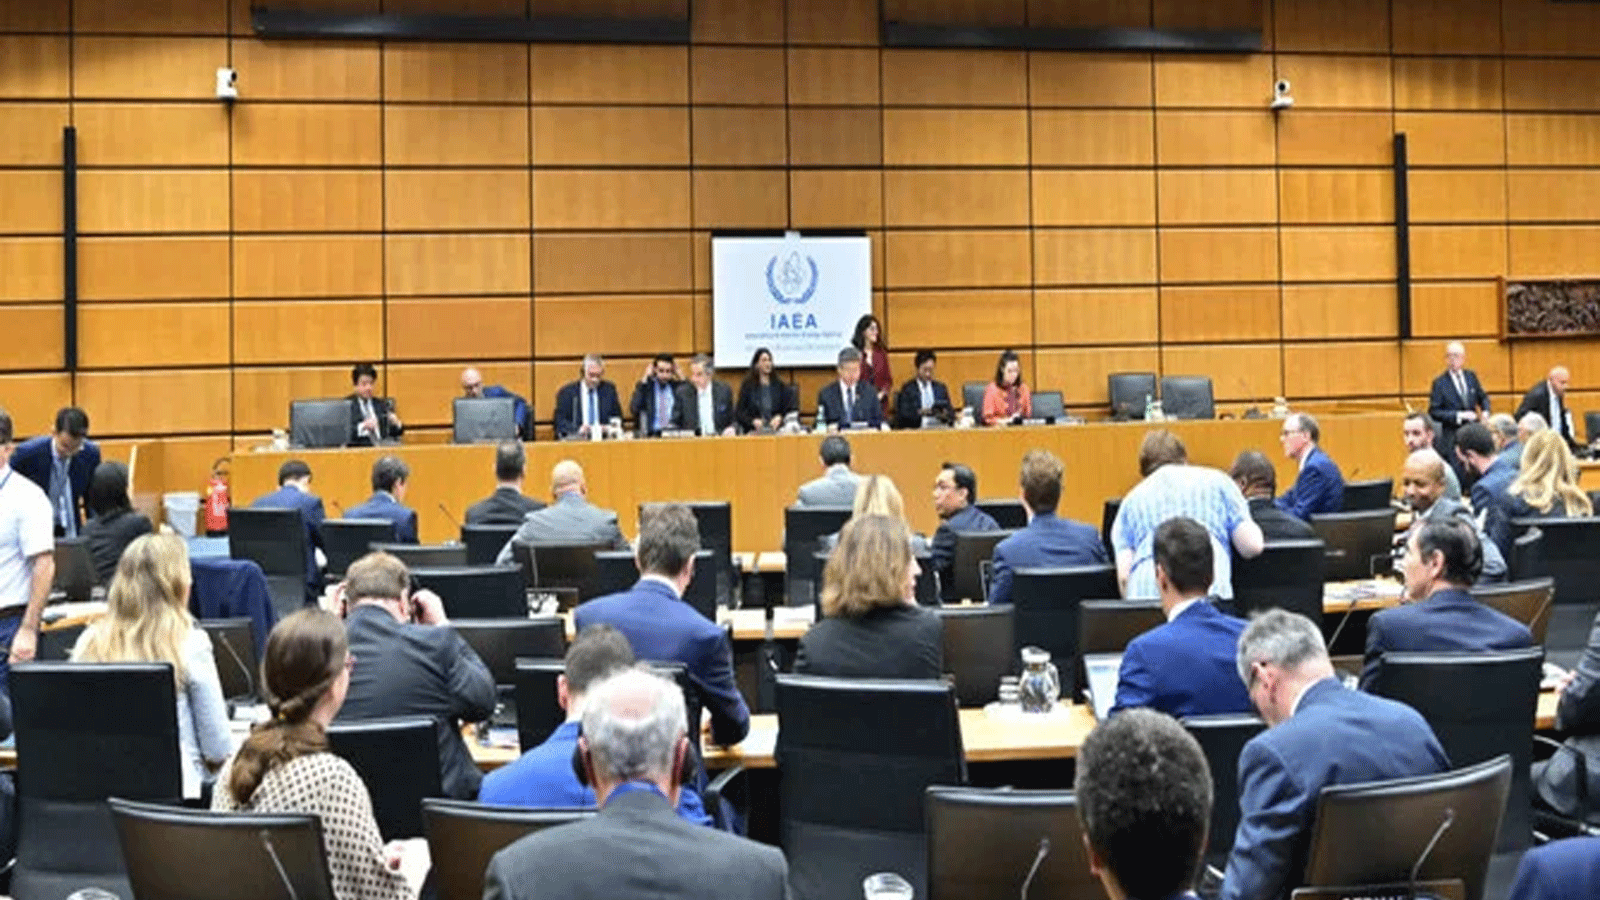 دبلوماسيون يحضرون الاجتماع الفصلي لمجلس محافظي الوكالة الدولية للطاقة الذرية في مقر الوكالة في فيينا، النمسا